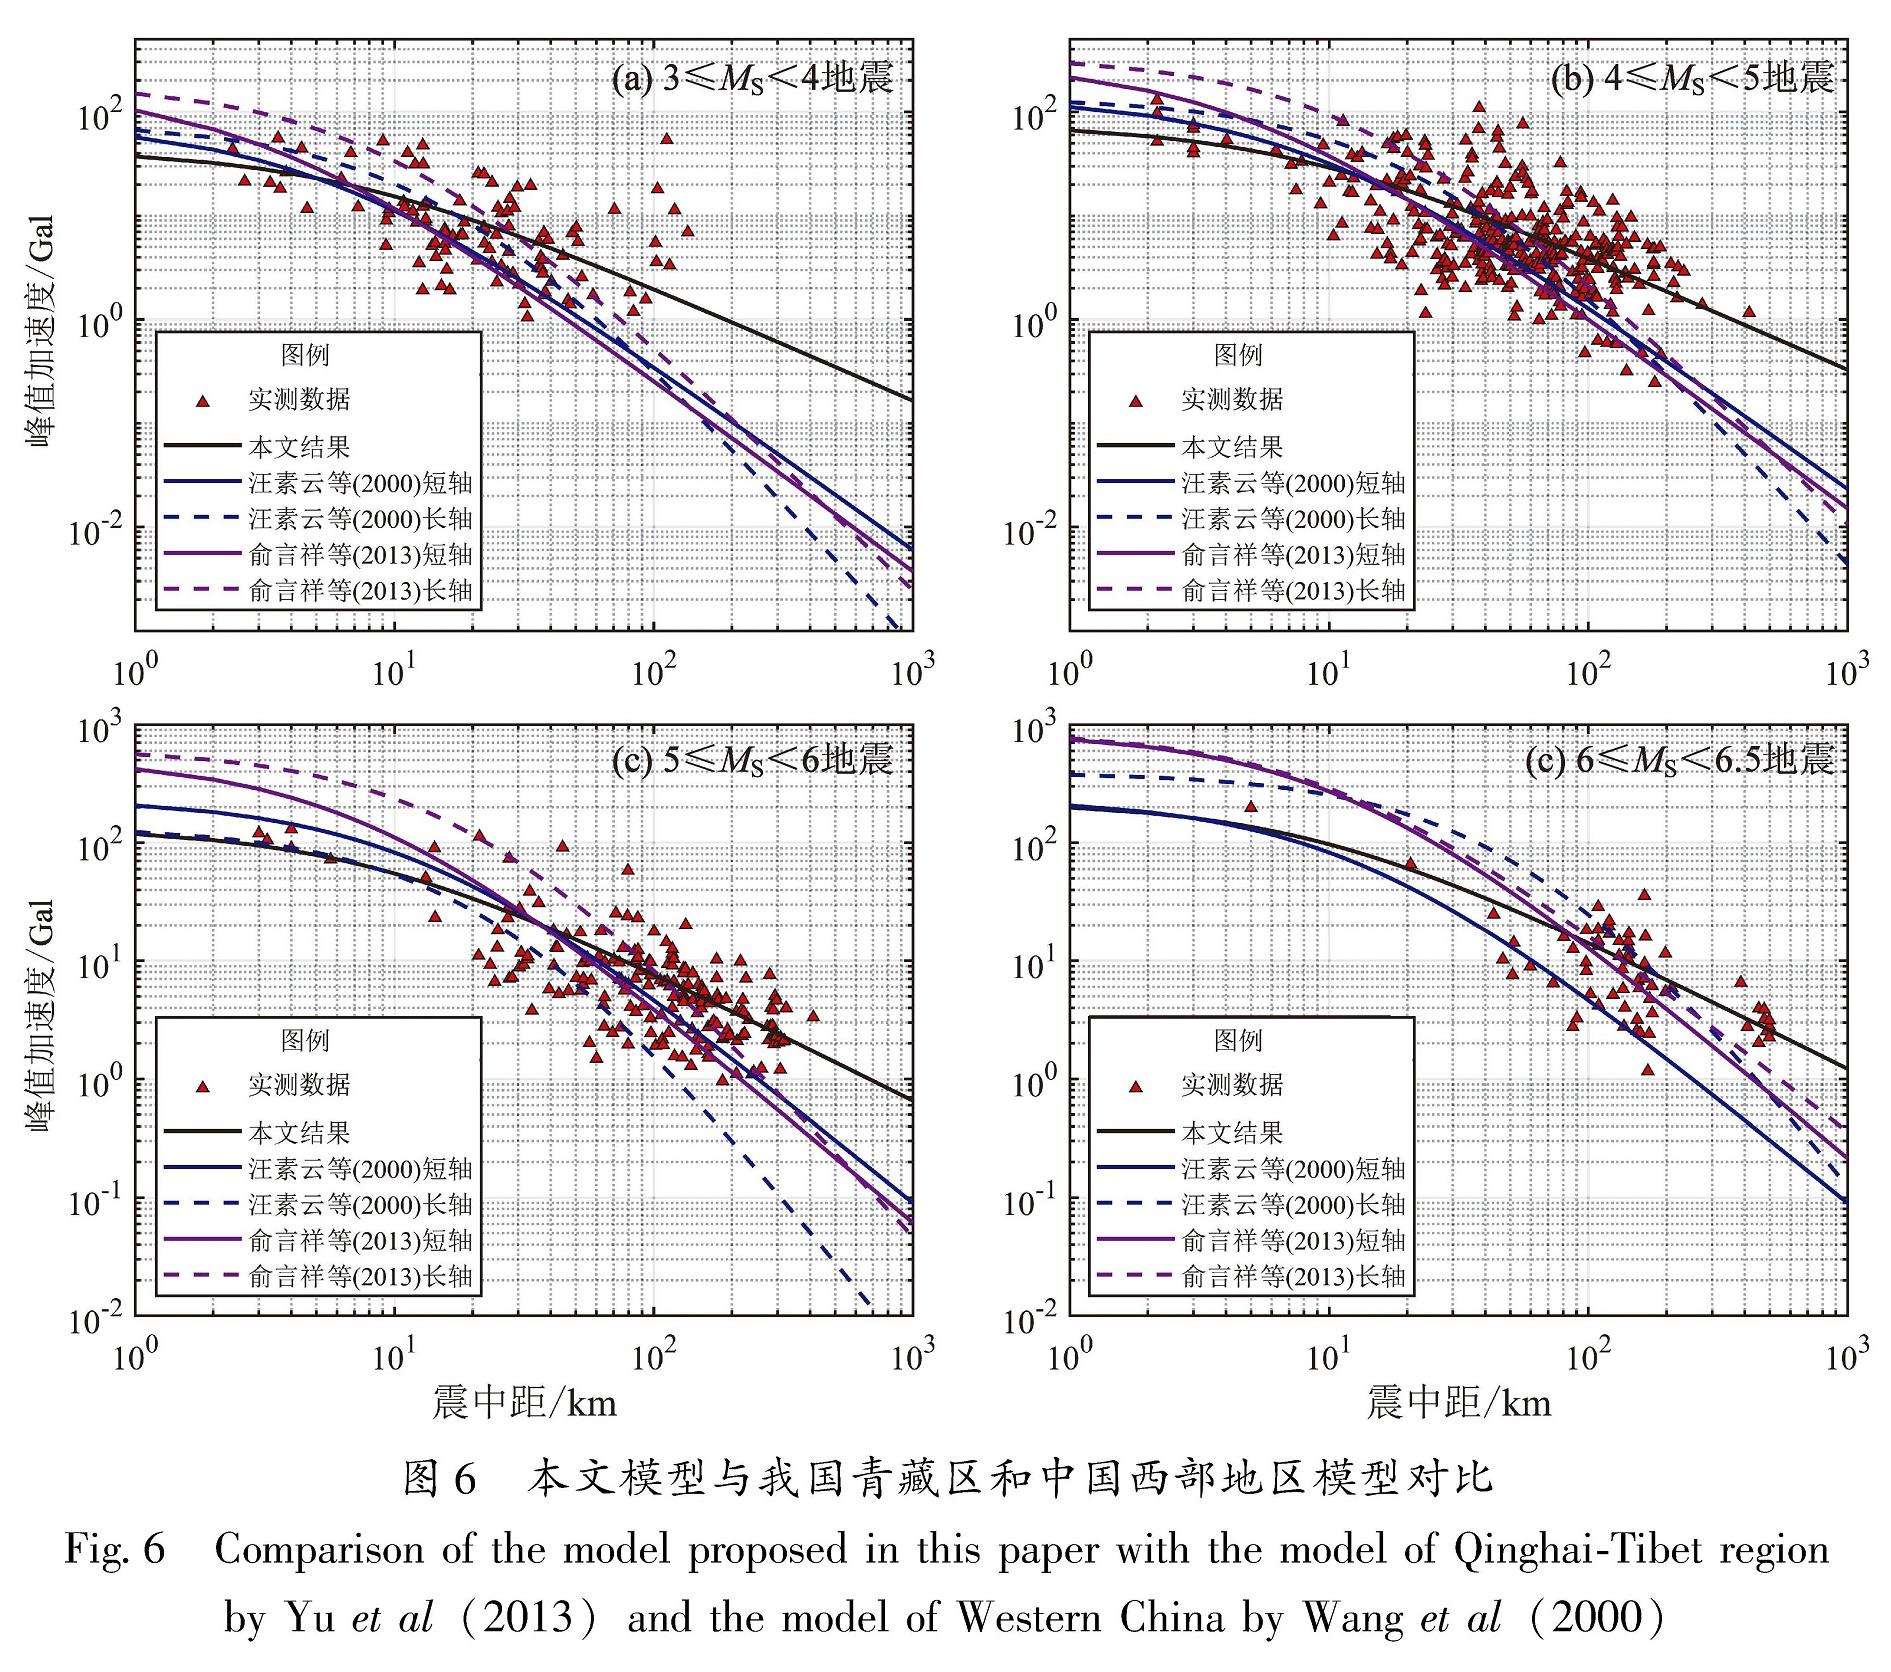 图6 本文模型与我国青藏区和中国西部地区模型对比<br/>Fig.6 Comparison of the model proposed in this paper with the model of Qinghai-Tibet region by Yu et al(2013)and the model of Western China by Wang et al(2000)